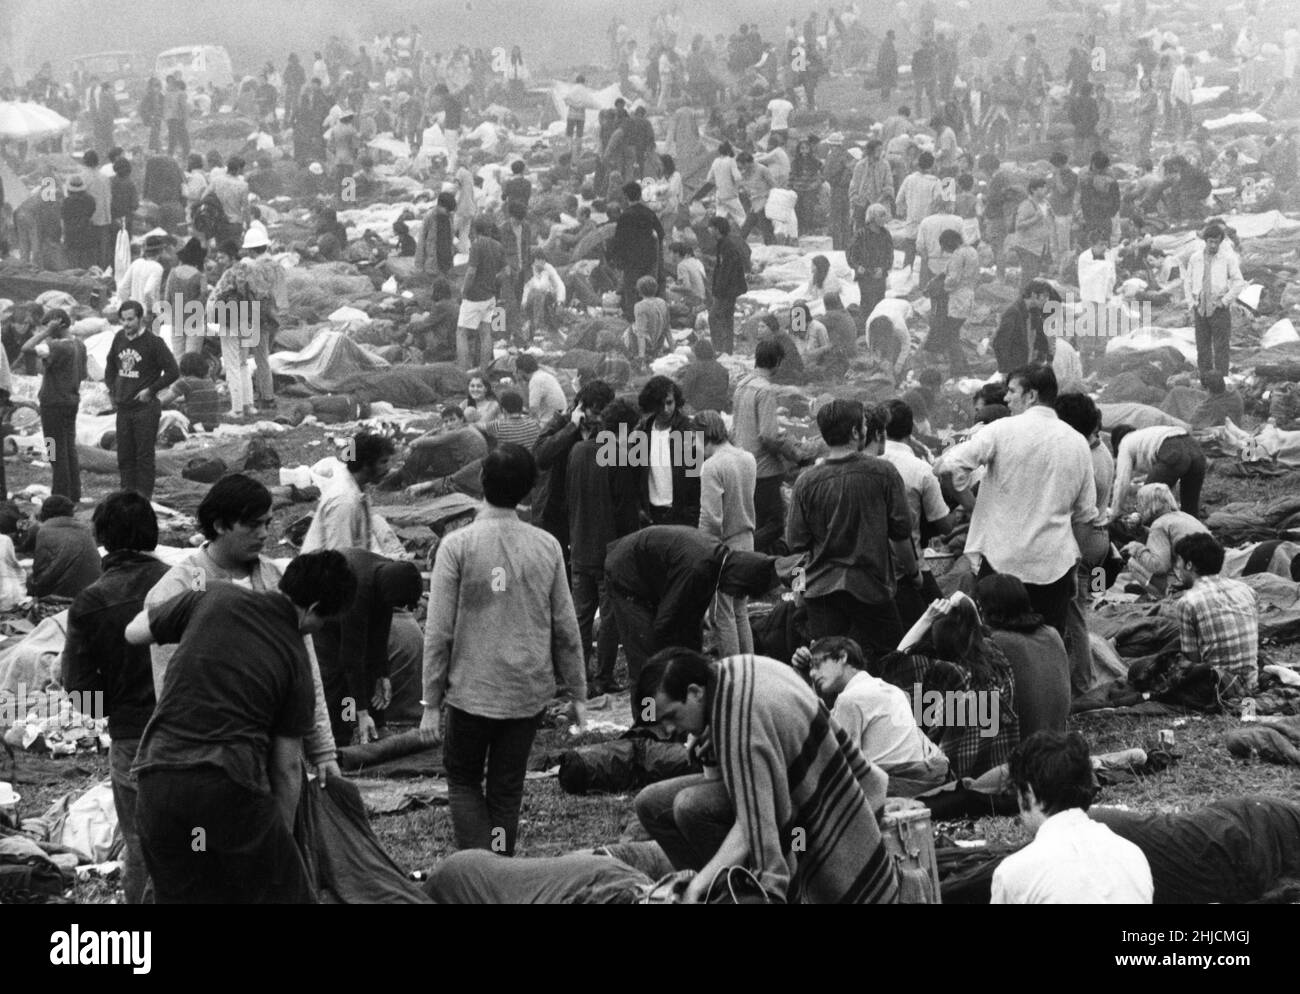 Le Woodstock Music and Art Festival, un célèbre festival de rock qui a eu lieu dans une ferme laitière de Bethel, New York, du 15 au 17 août 1969. Banque D'Images